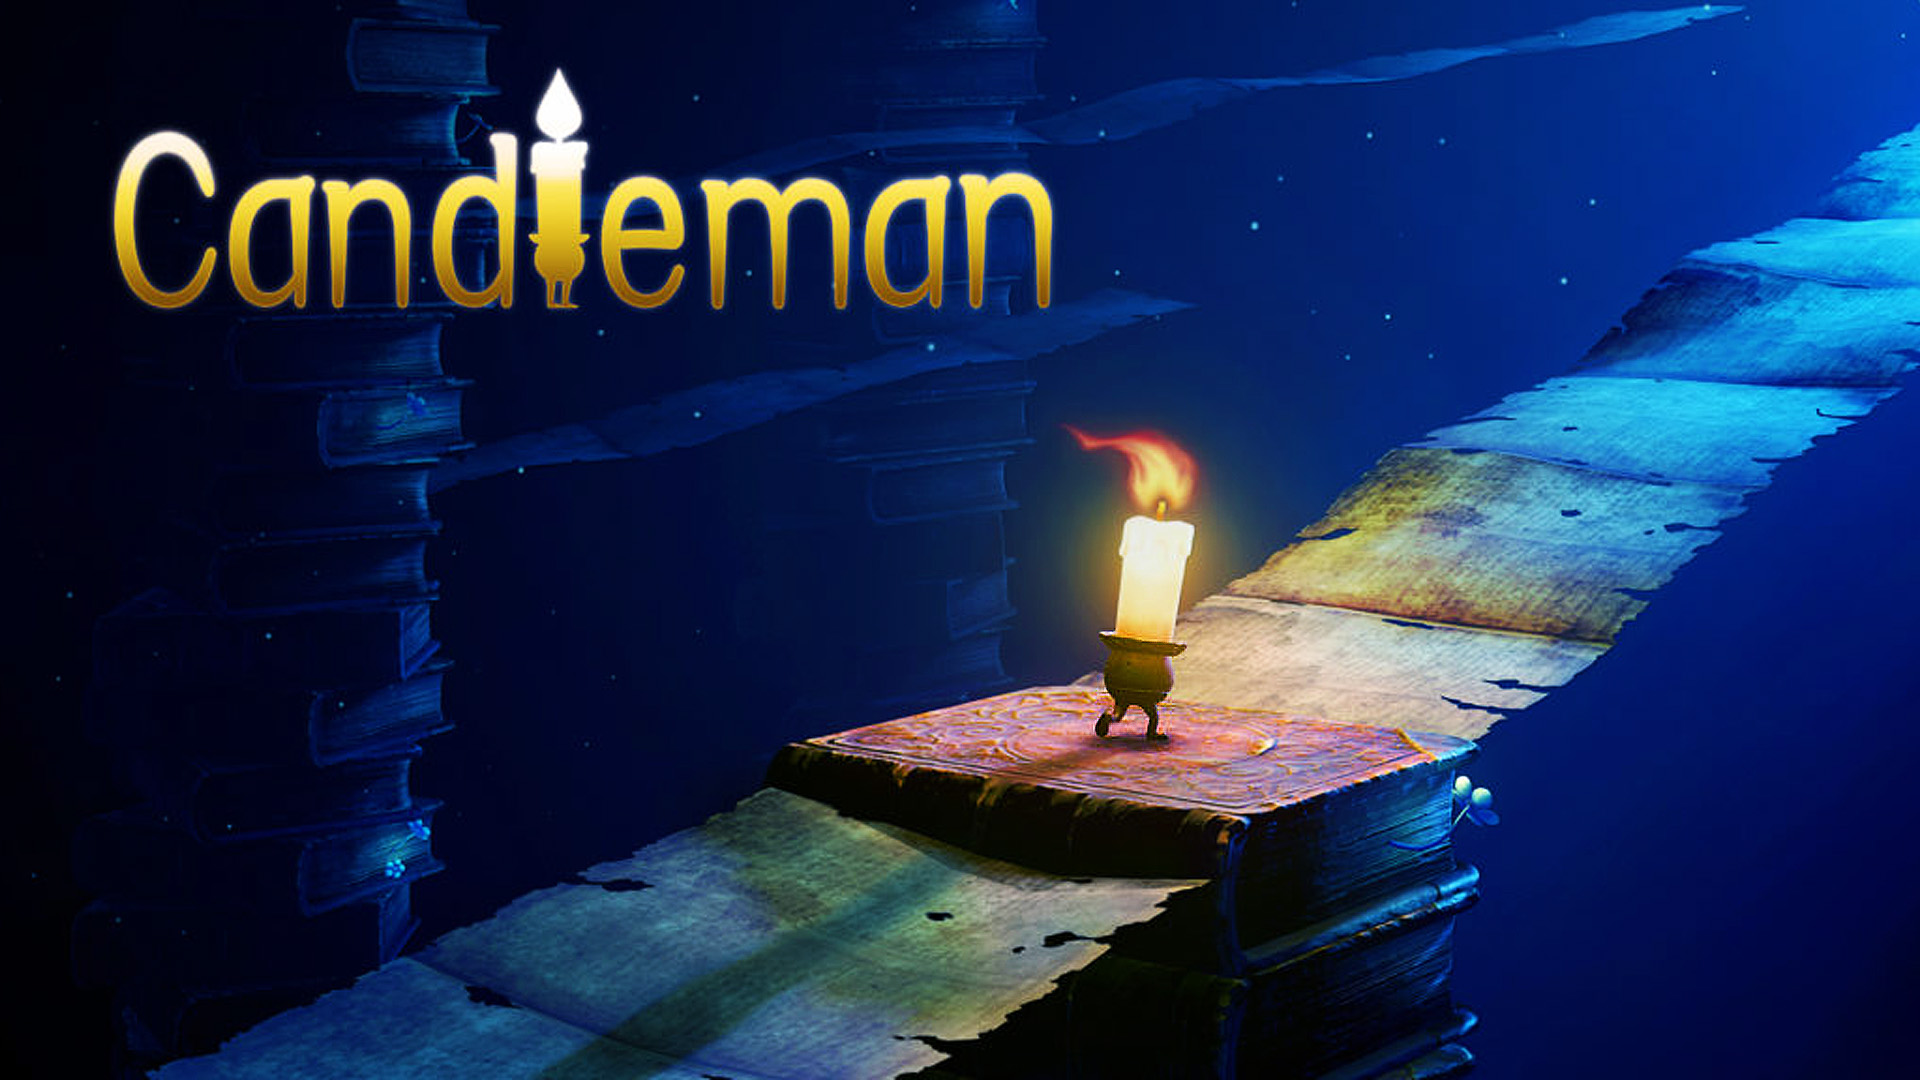 لعبة الألغاز والإثارة Candleman متاحة الآن على أندرويد و iOS